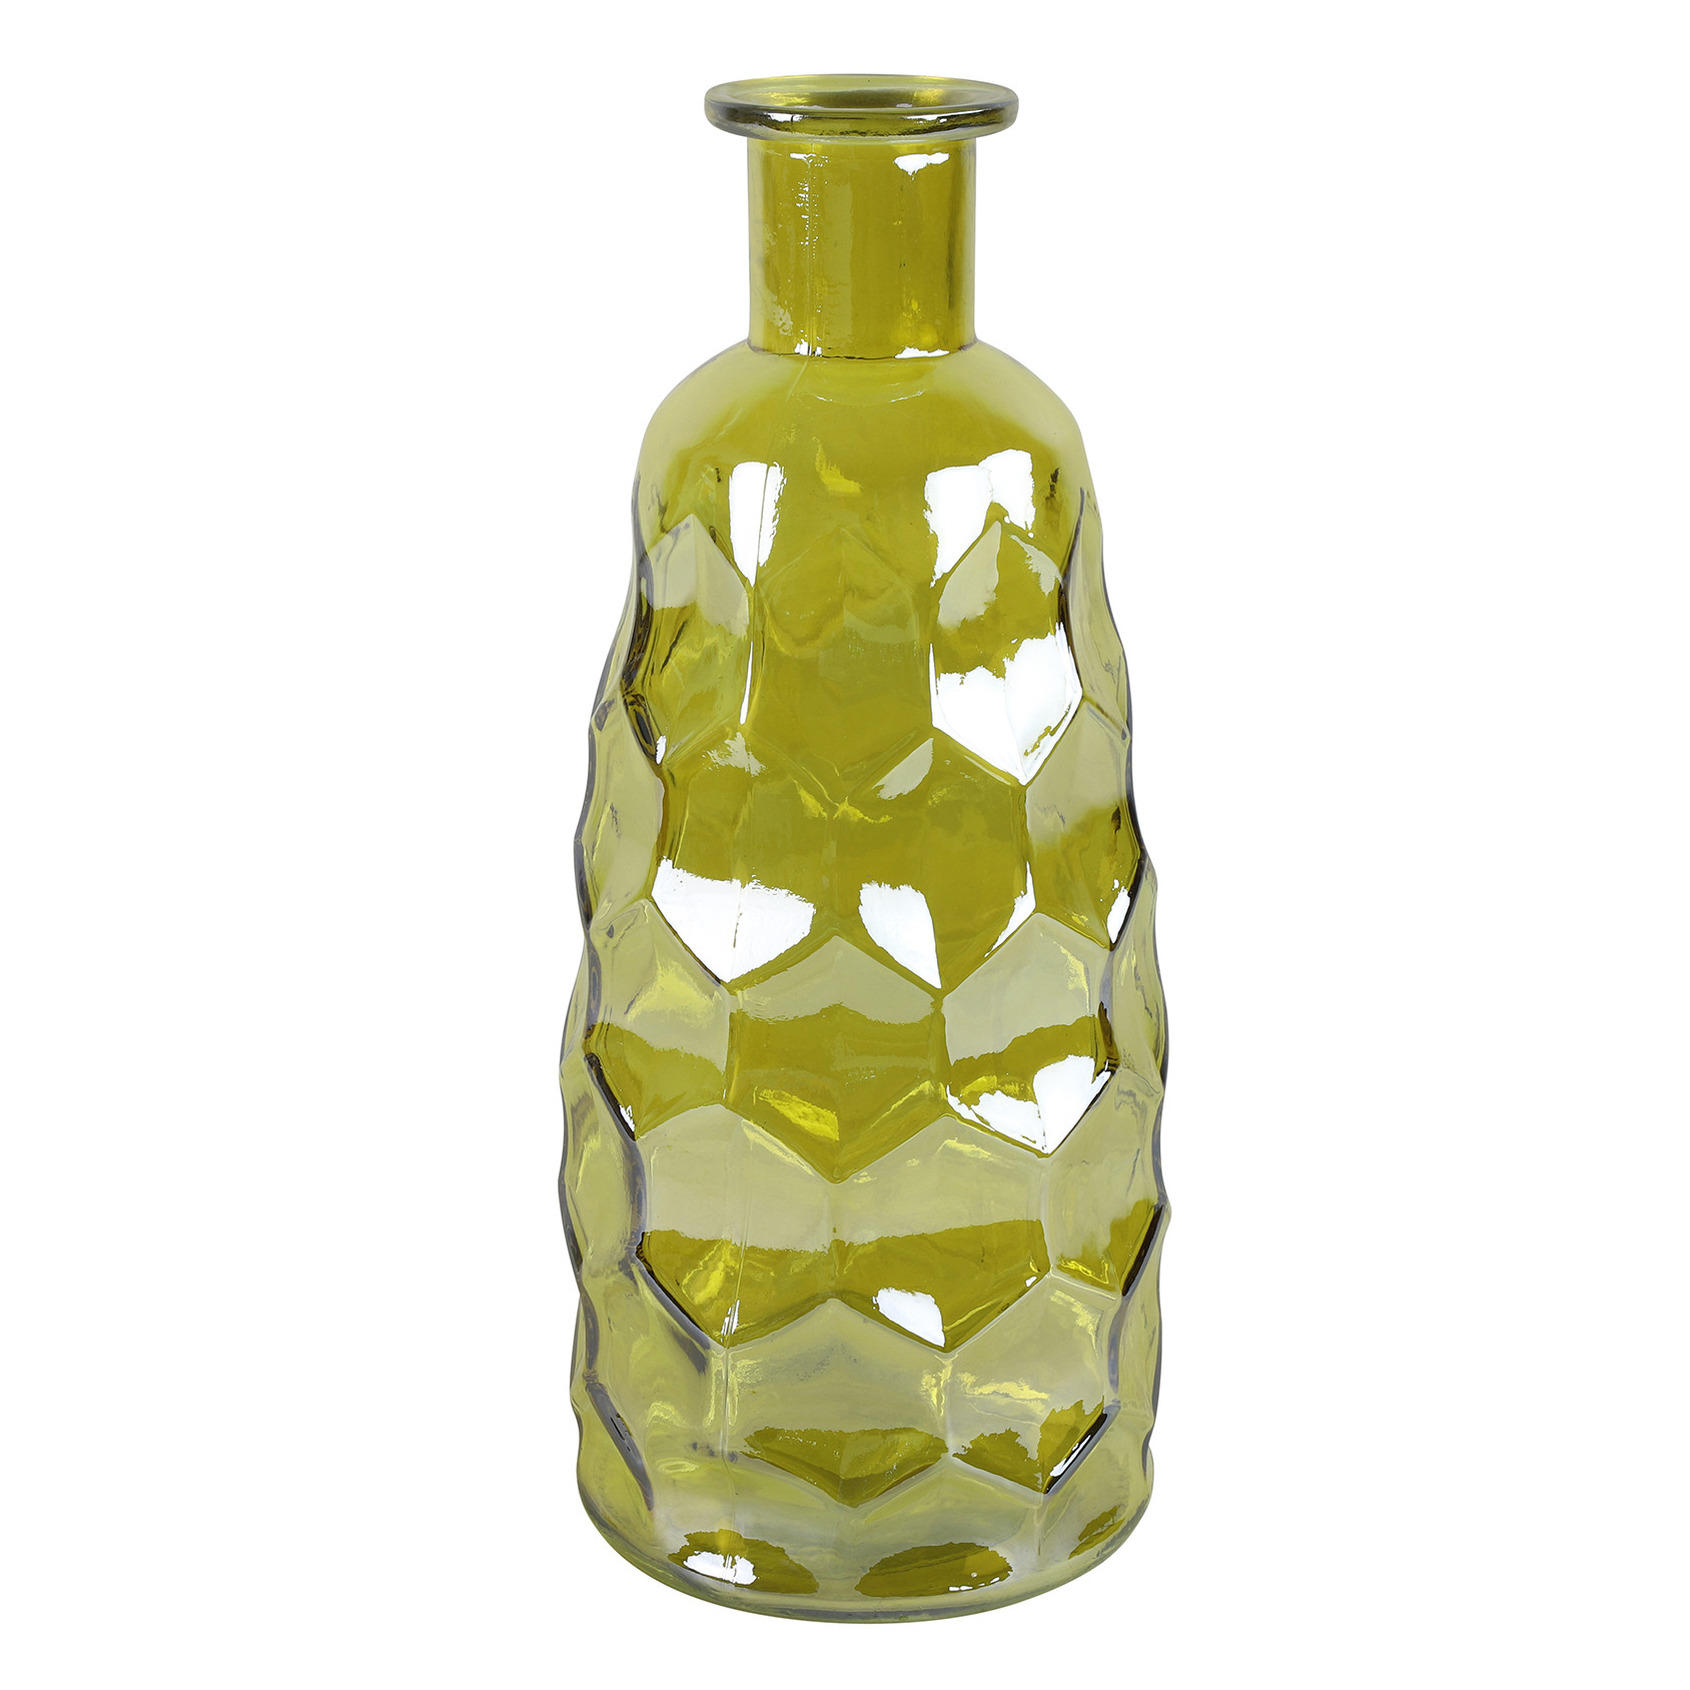 Countryfield Art Deco bloemenvaas - geel transparant - glas - fles vorm - D12 x H30 cm -